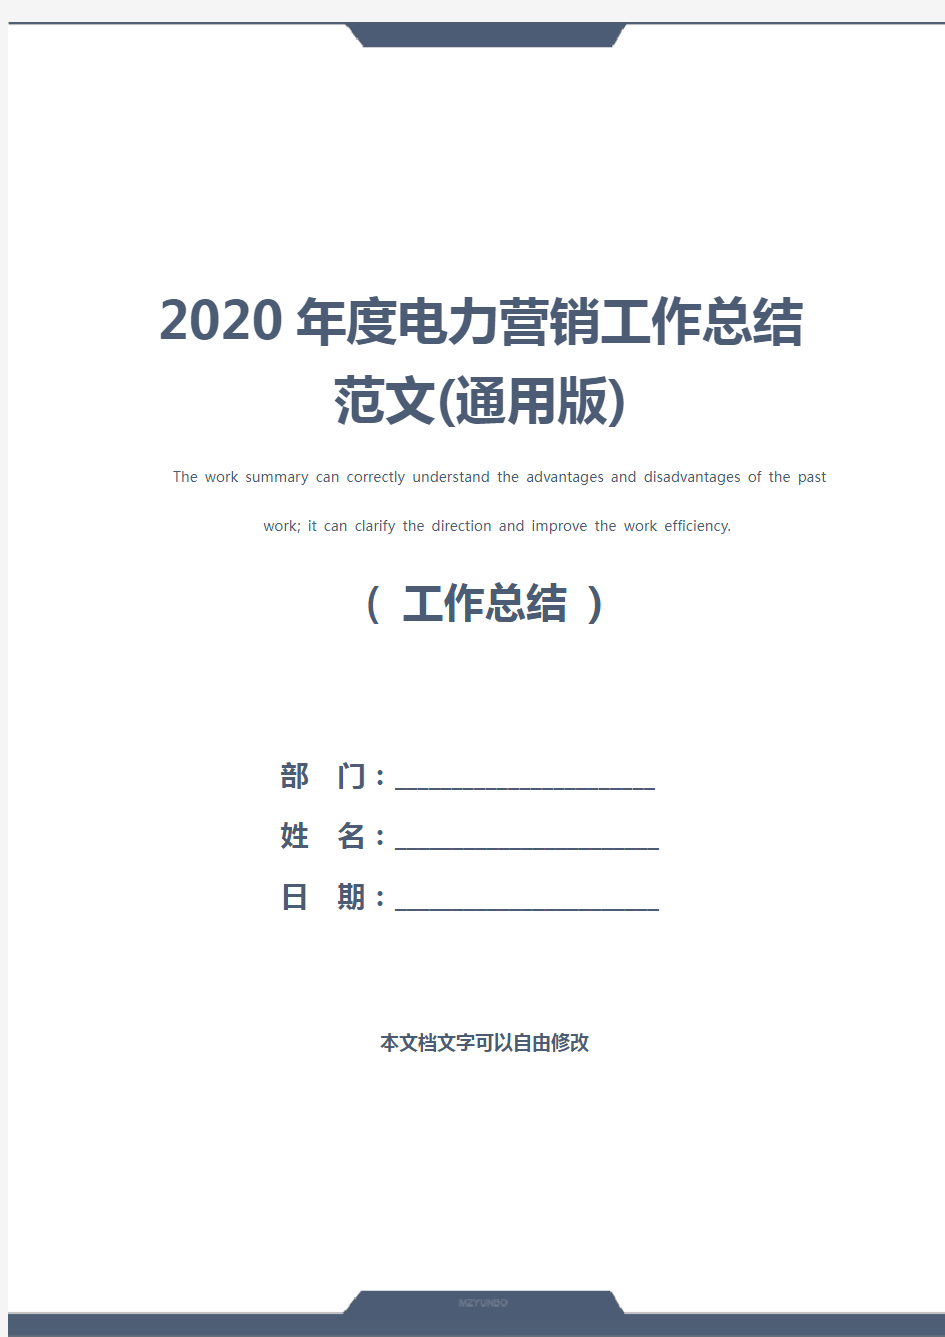 2020年度电力营销工作总结范文(通用版)